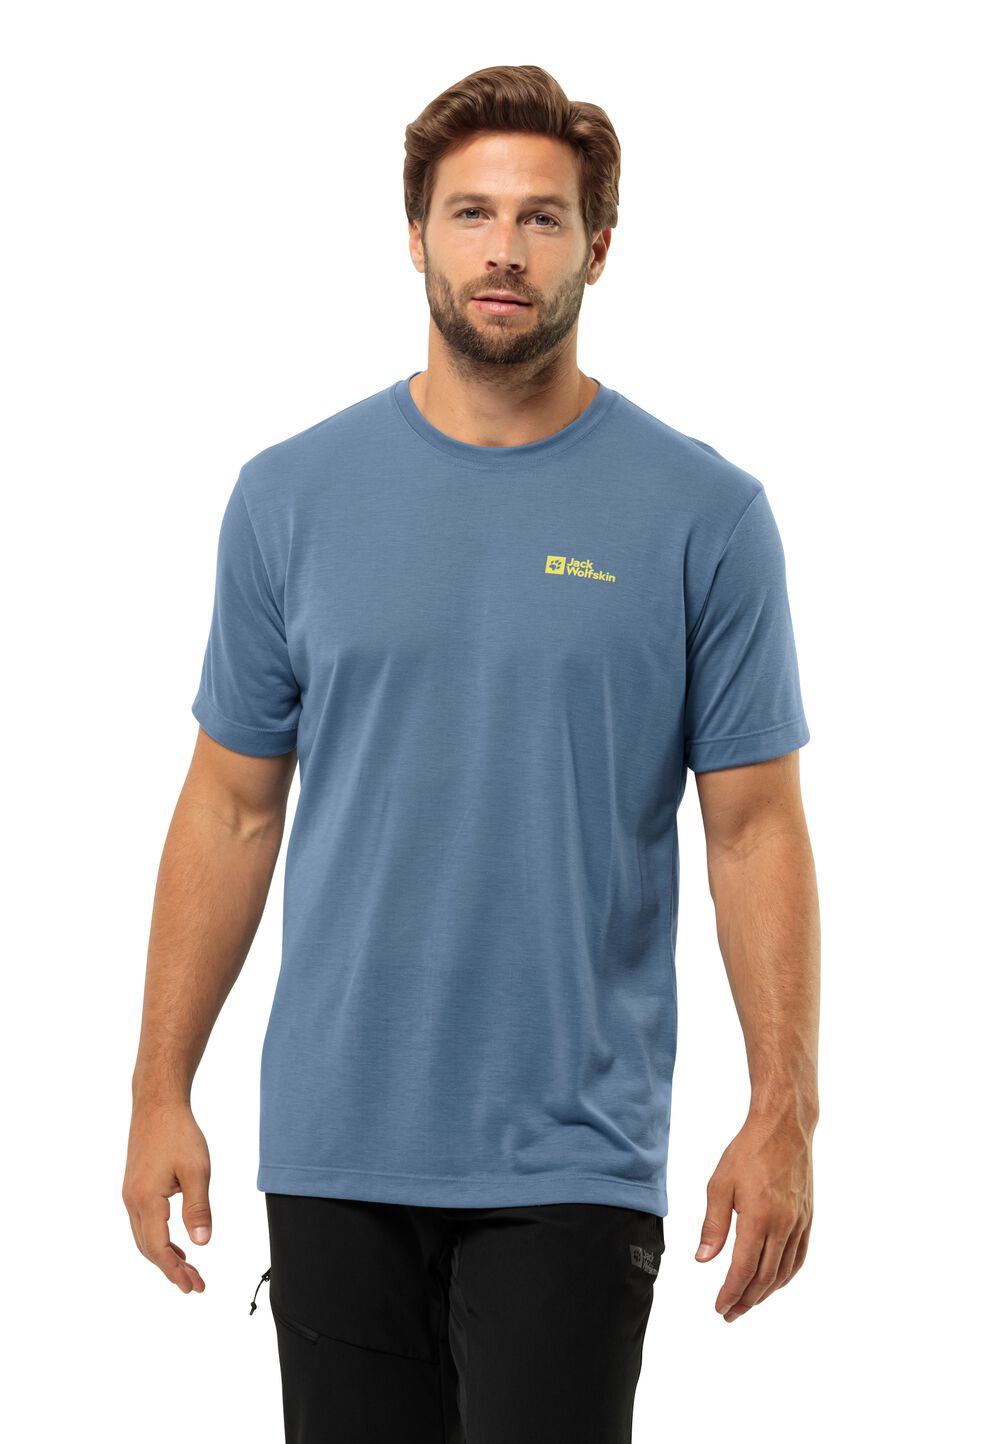 Jack Wolfskin Vonnan S S T-Shirt Men Functioneel shirt Heren M elemental blue elemental blue